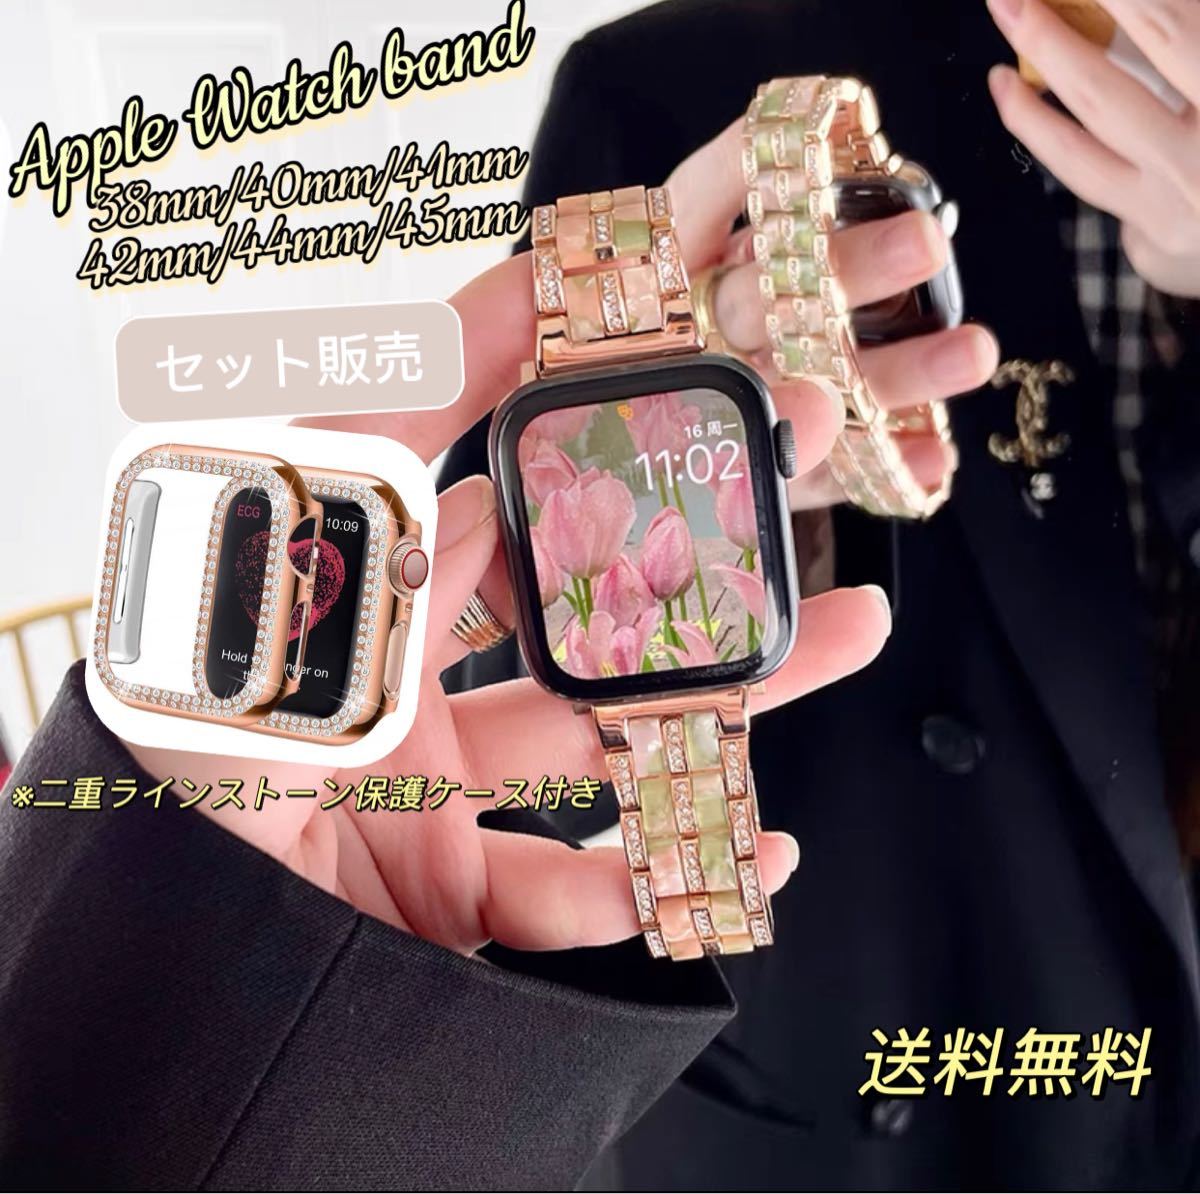 ☆新品☆Apple Watch キラキラ ケース ブラック41mm - 金属ベルト